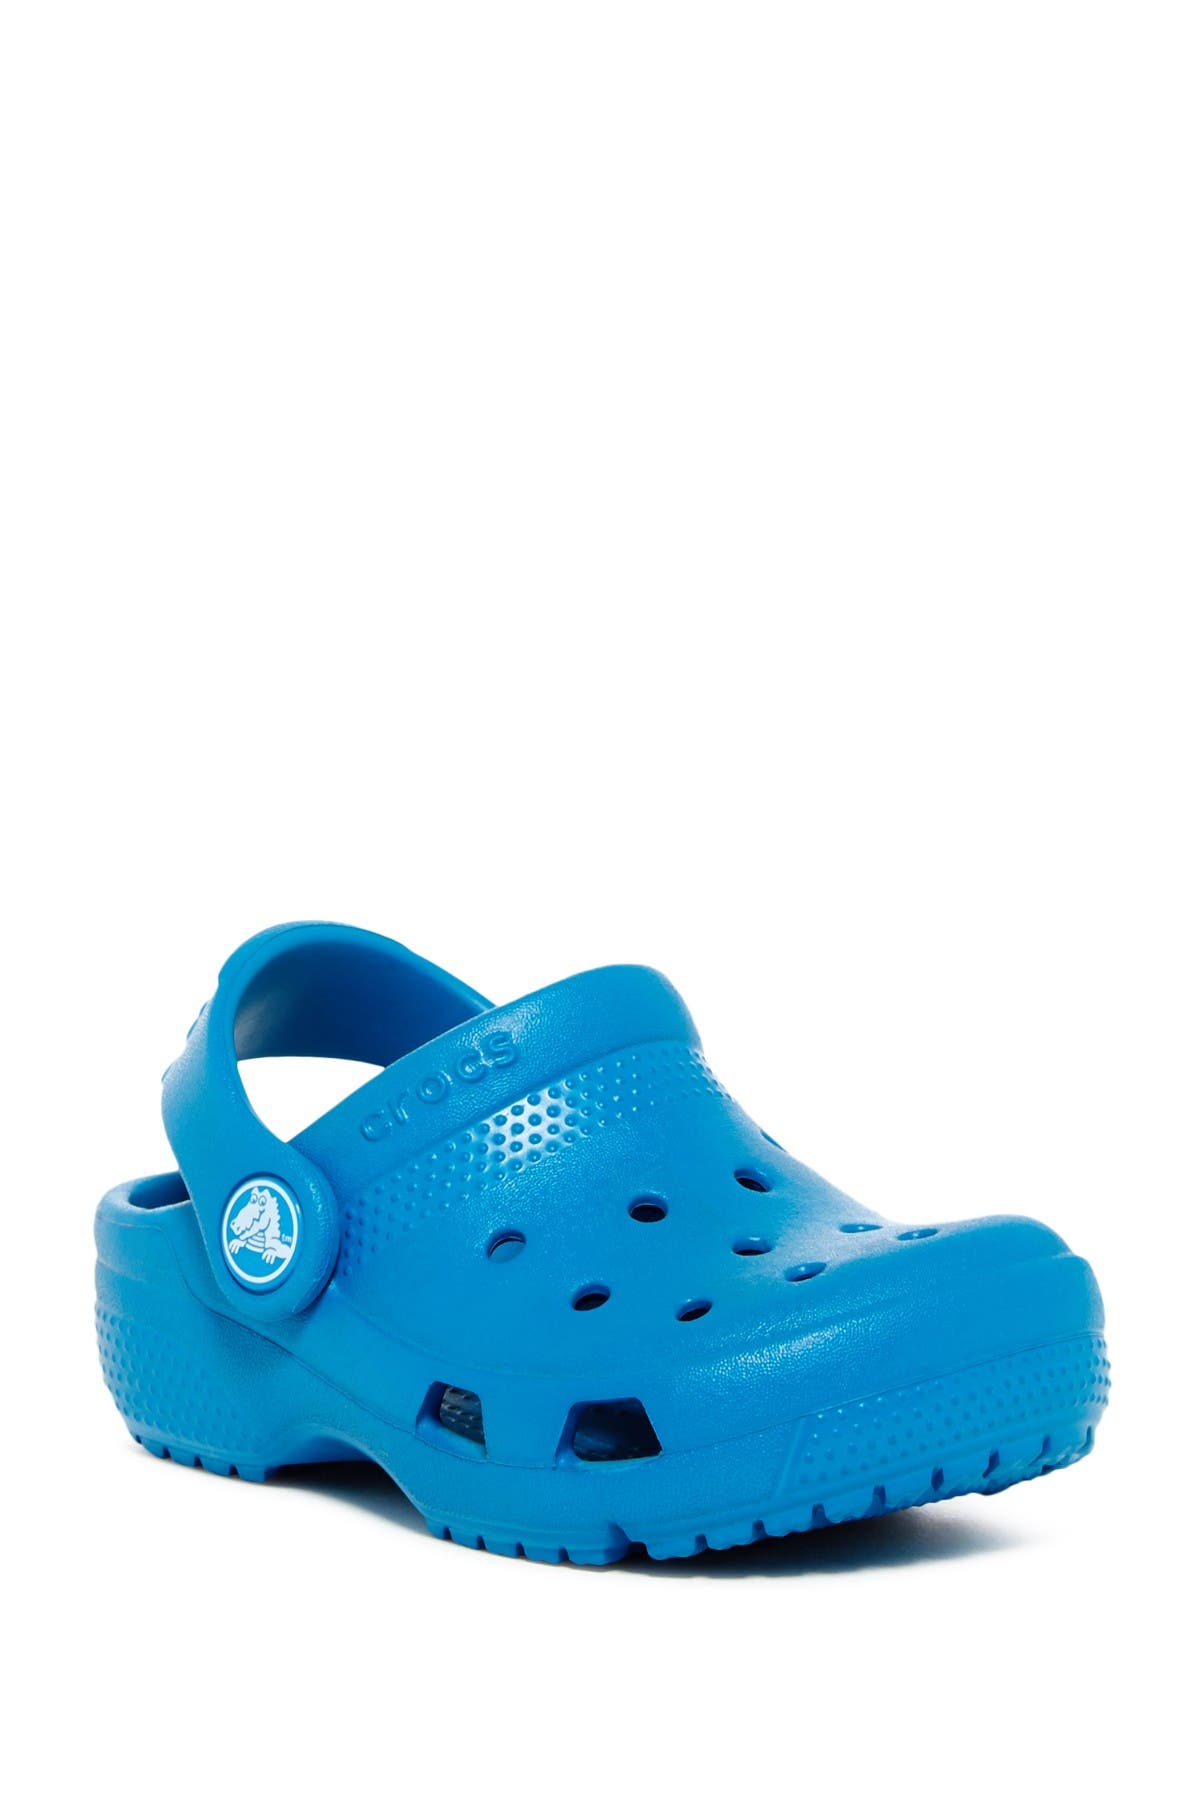 31+ Kids Crocs On Sale